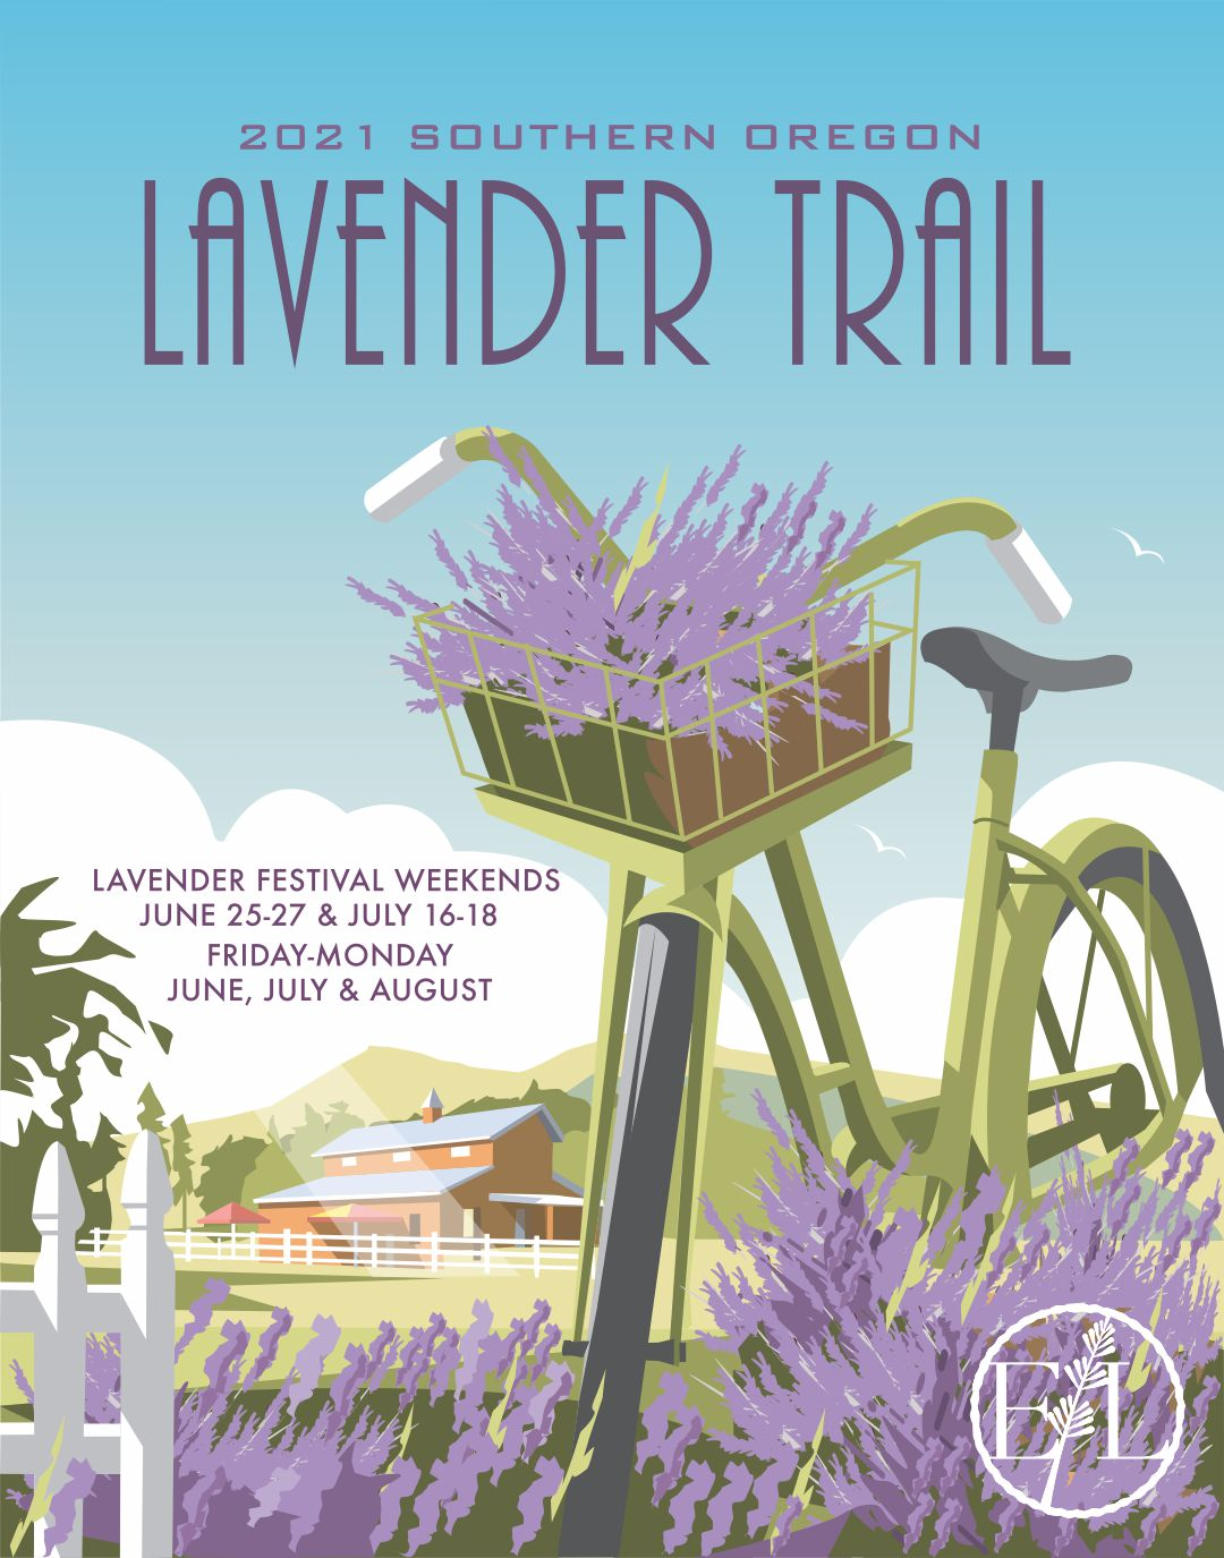 Southern Oregon Lavender trail 